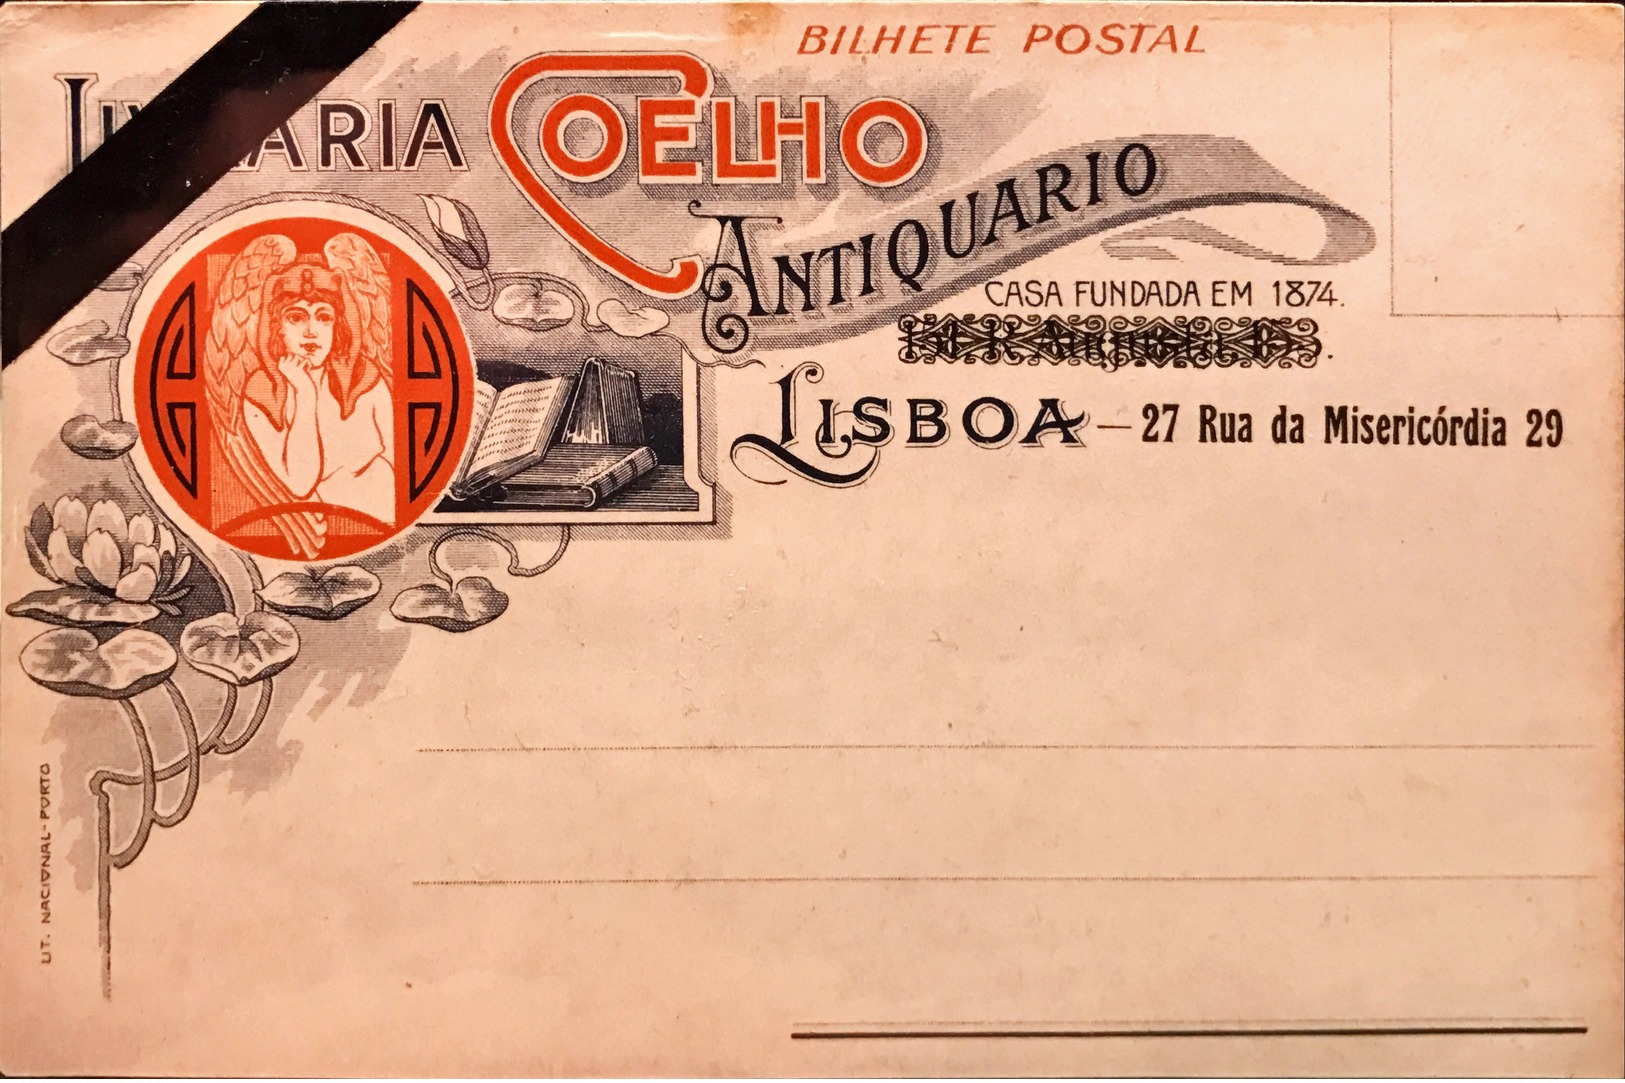 PORTUGAL. LISBOA. GRUSS. LIBRARIA COELHO. ANTIQUARIO. CASA FUNDADA EN 1874. LISBOA. 27 RUA DA MISERICORDIA 29 - Lisboa